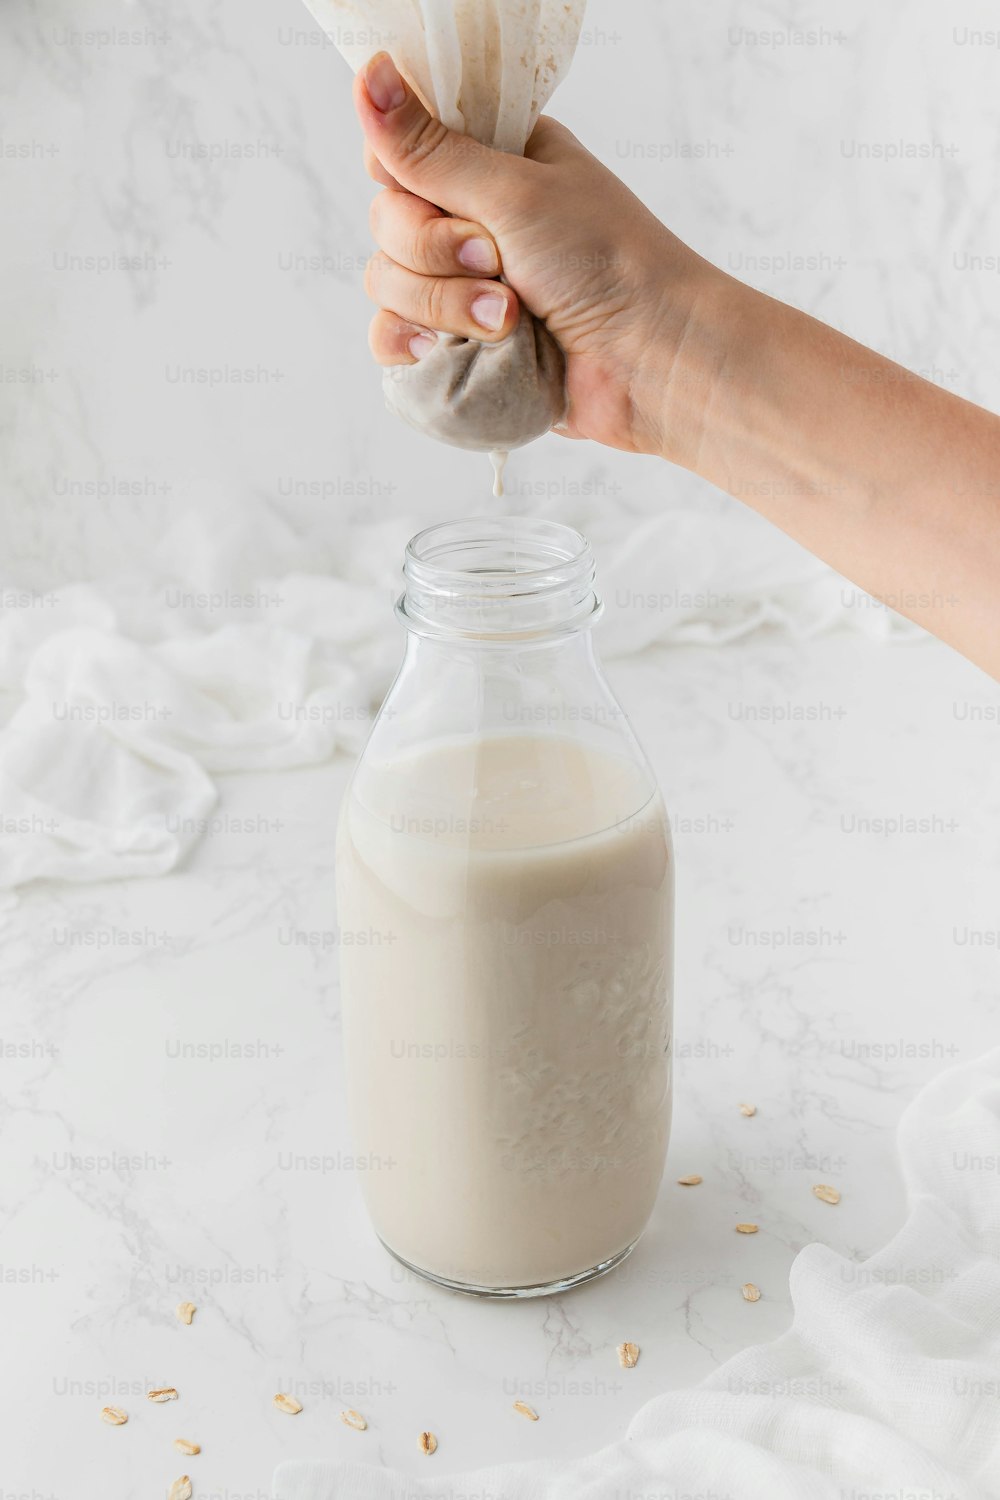 Eine Person gießt ein Glas Milch in ein Glas